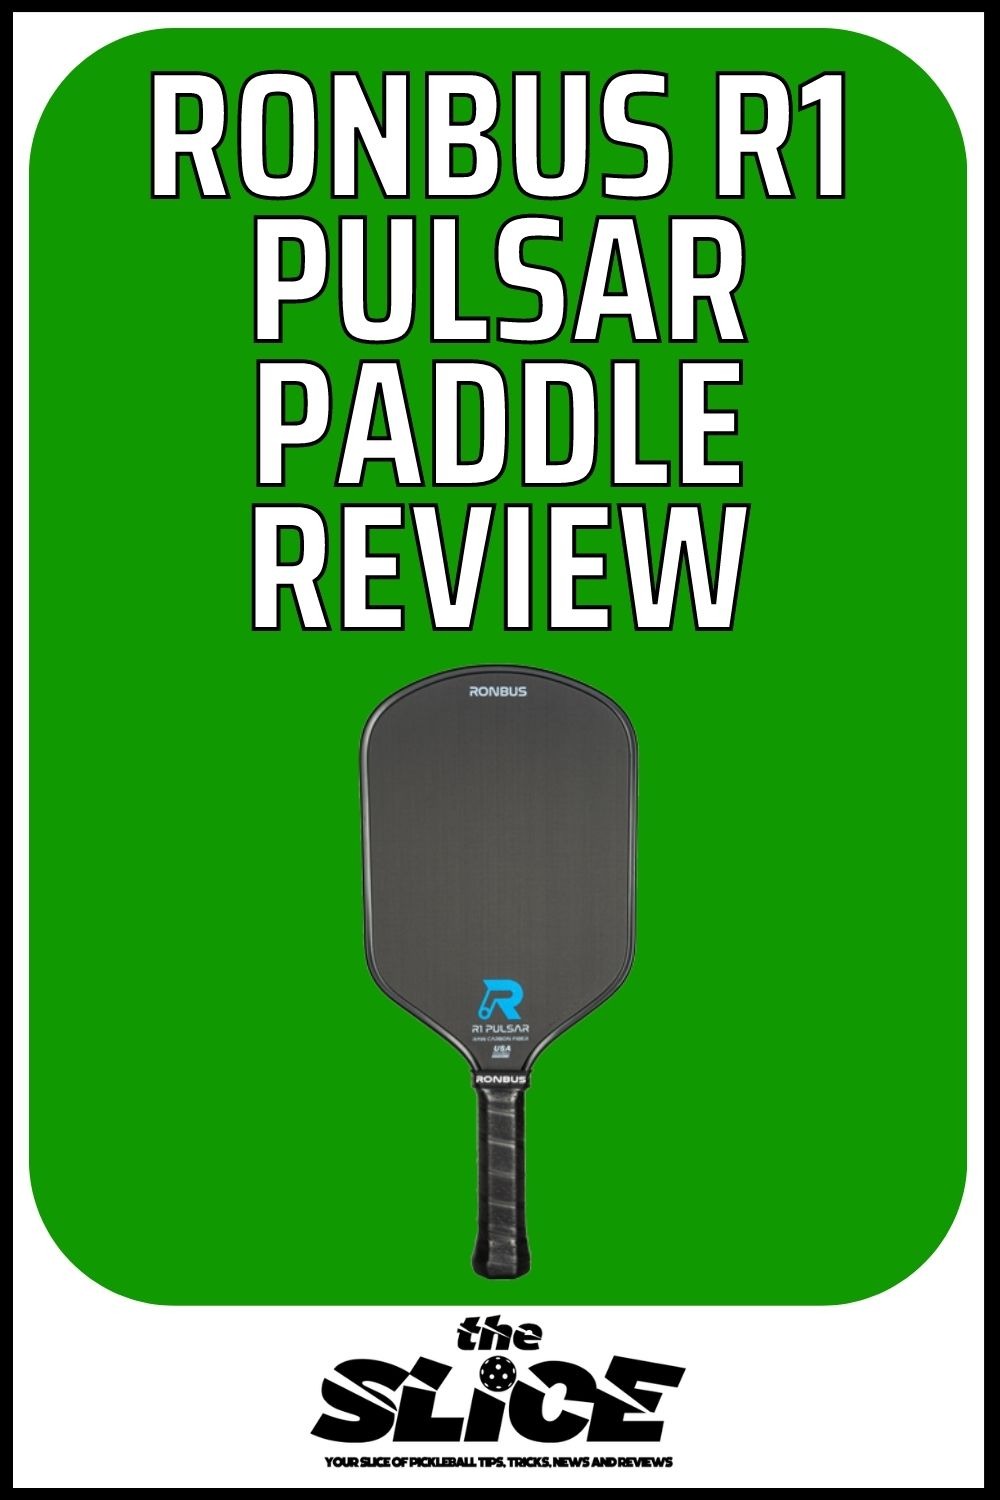 Ronbus R1 Pulsar Paddle Review